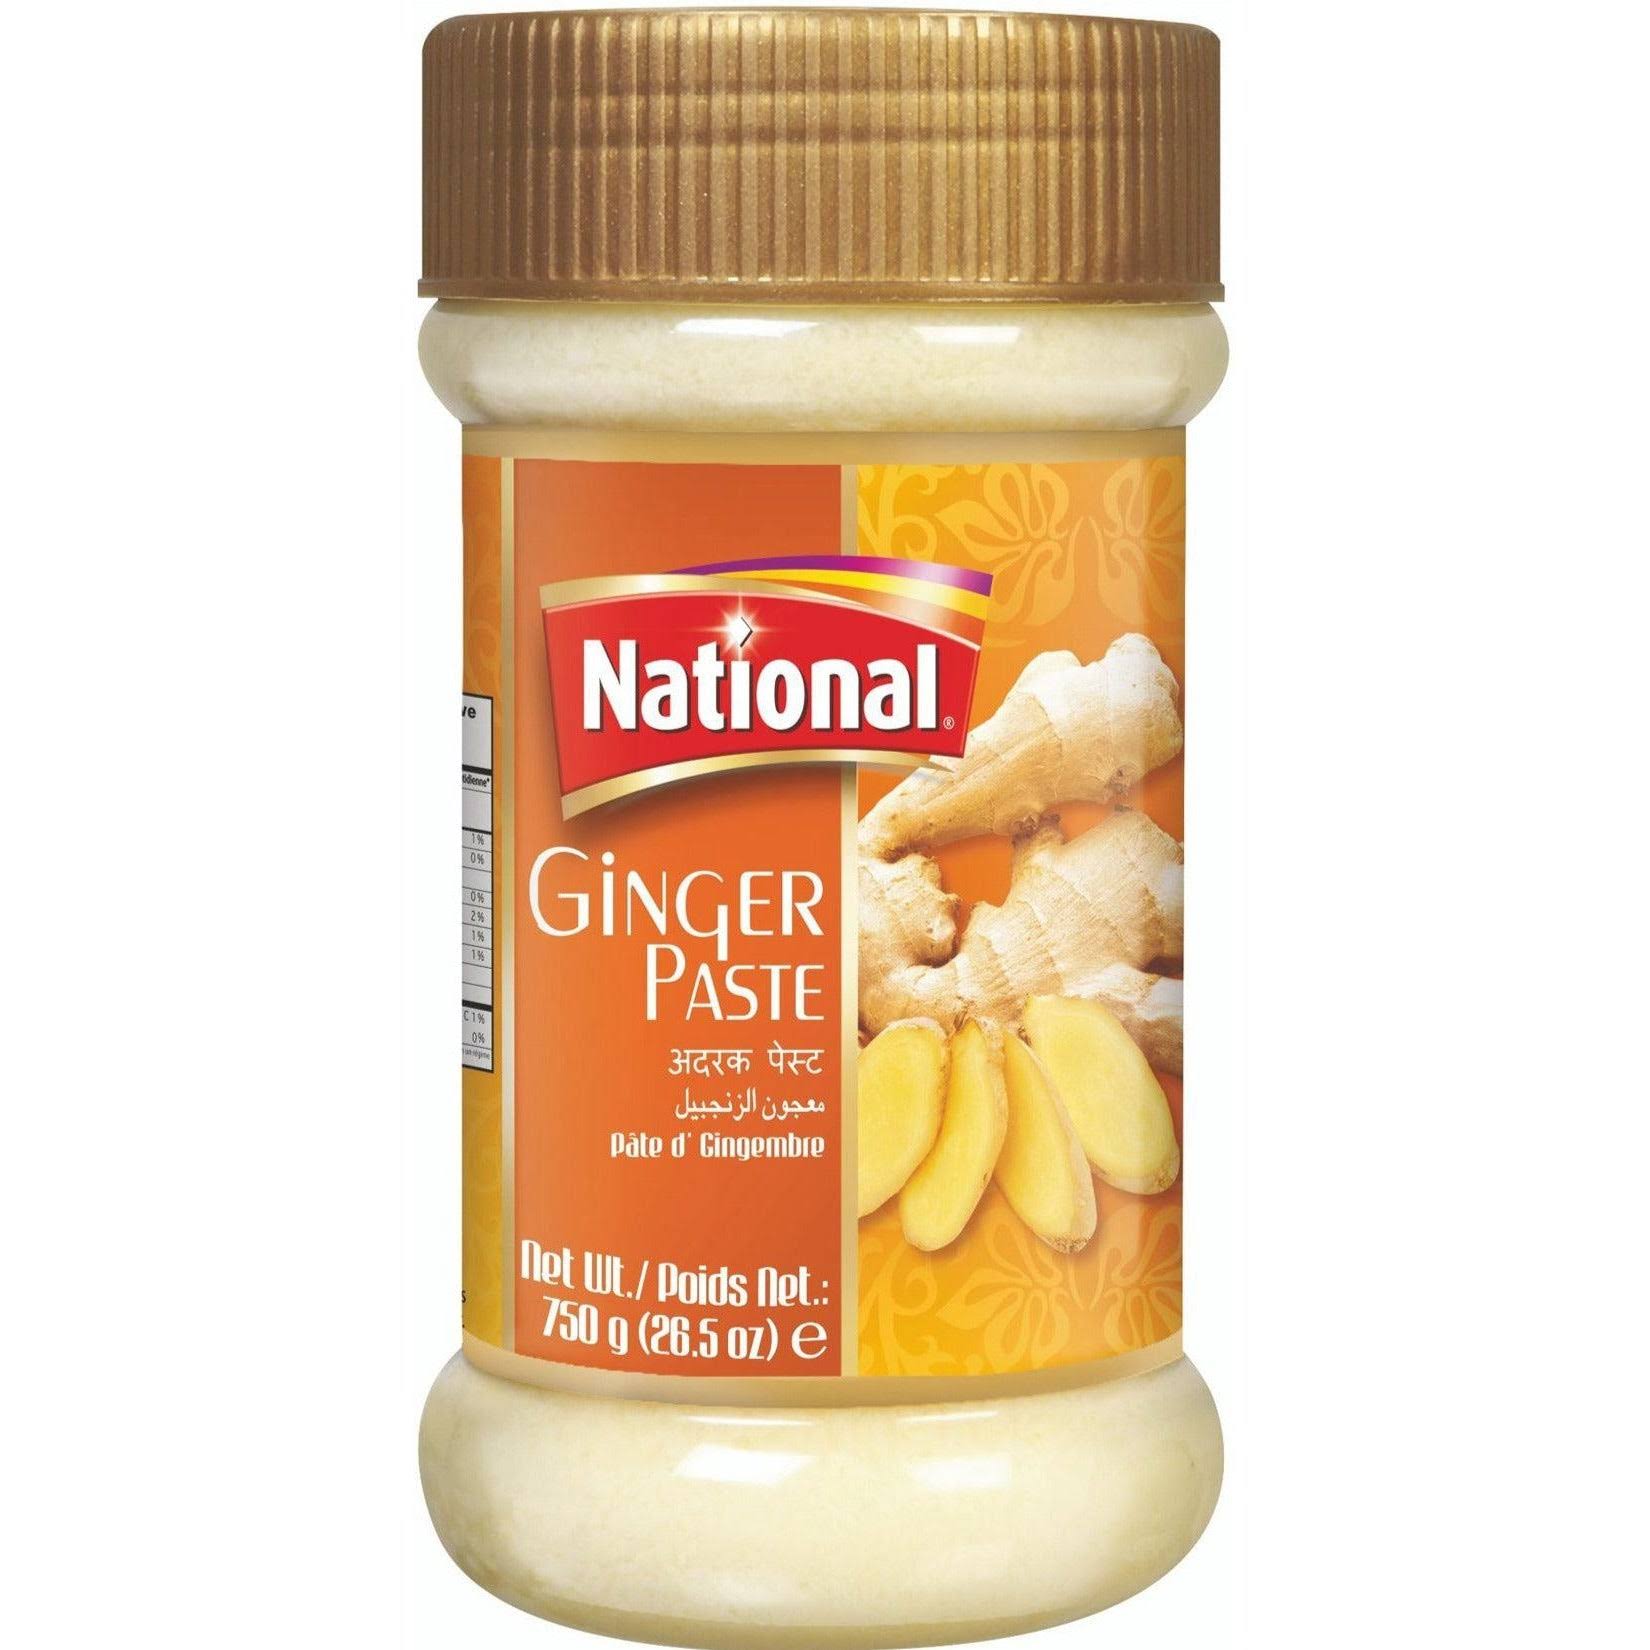 National Ginger Paste - 300g